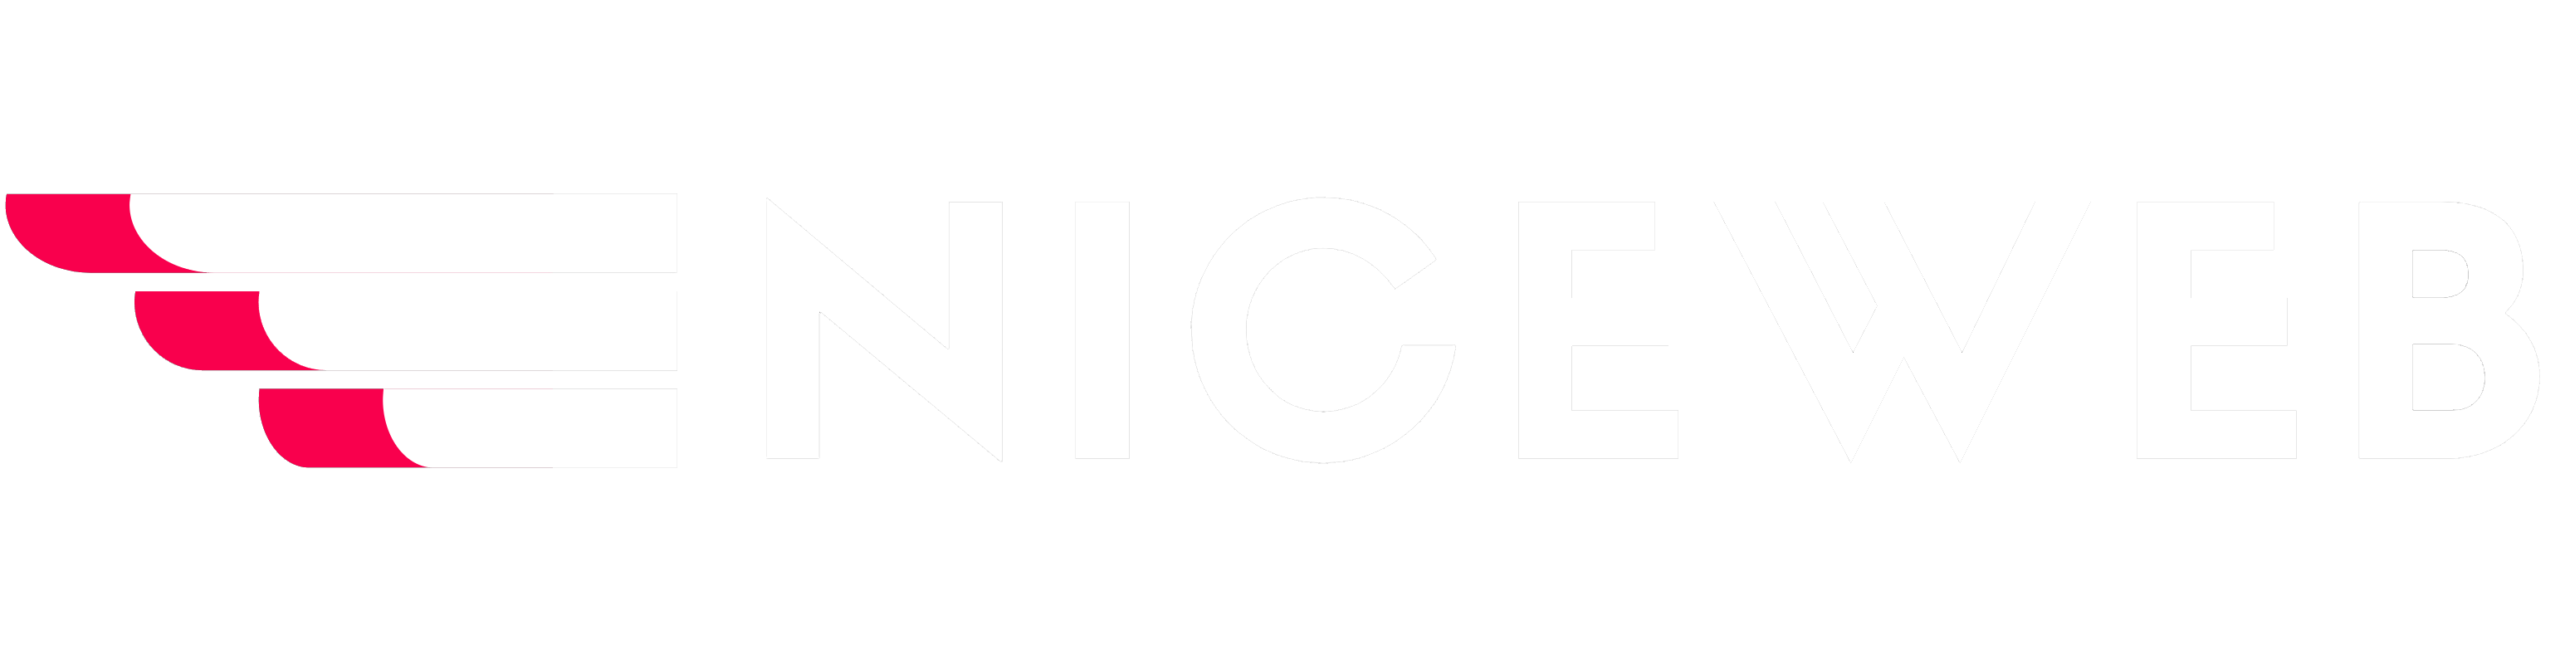 Niceweb